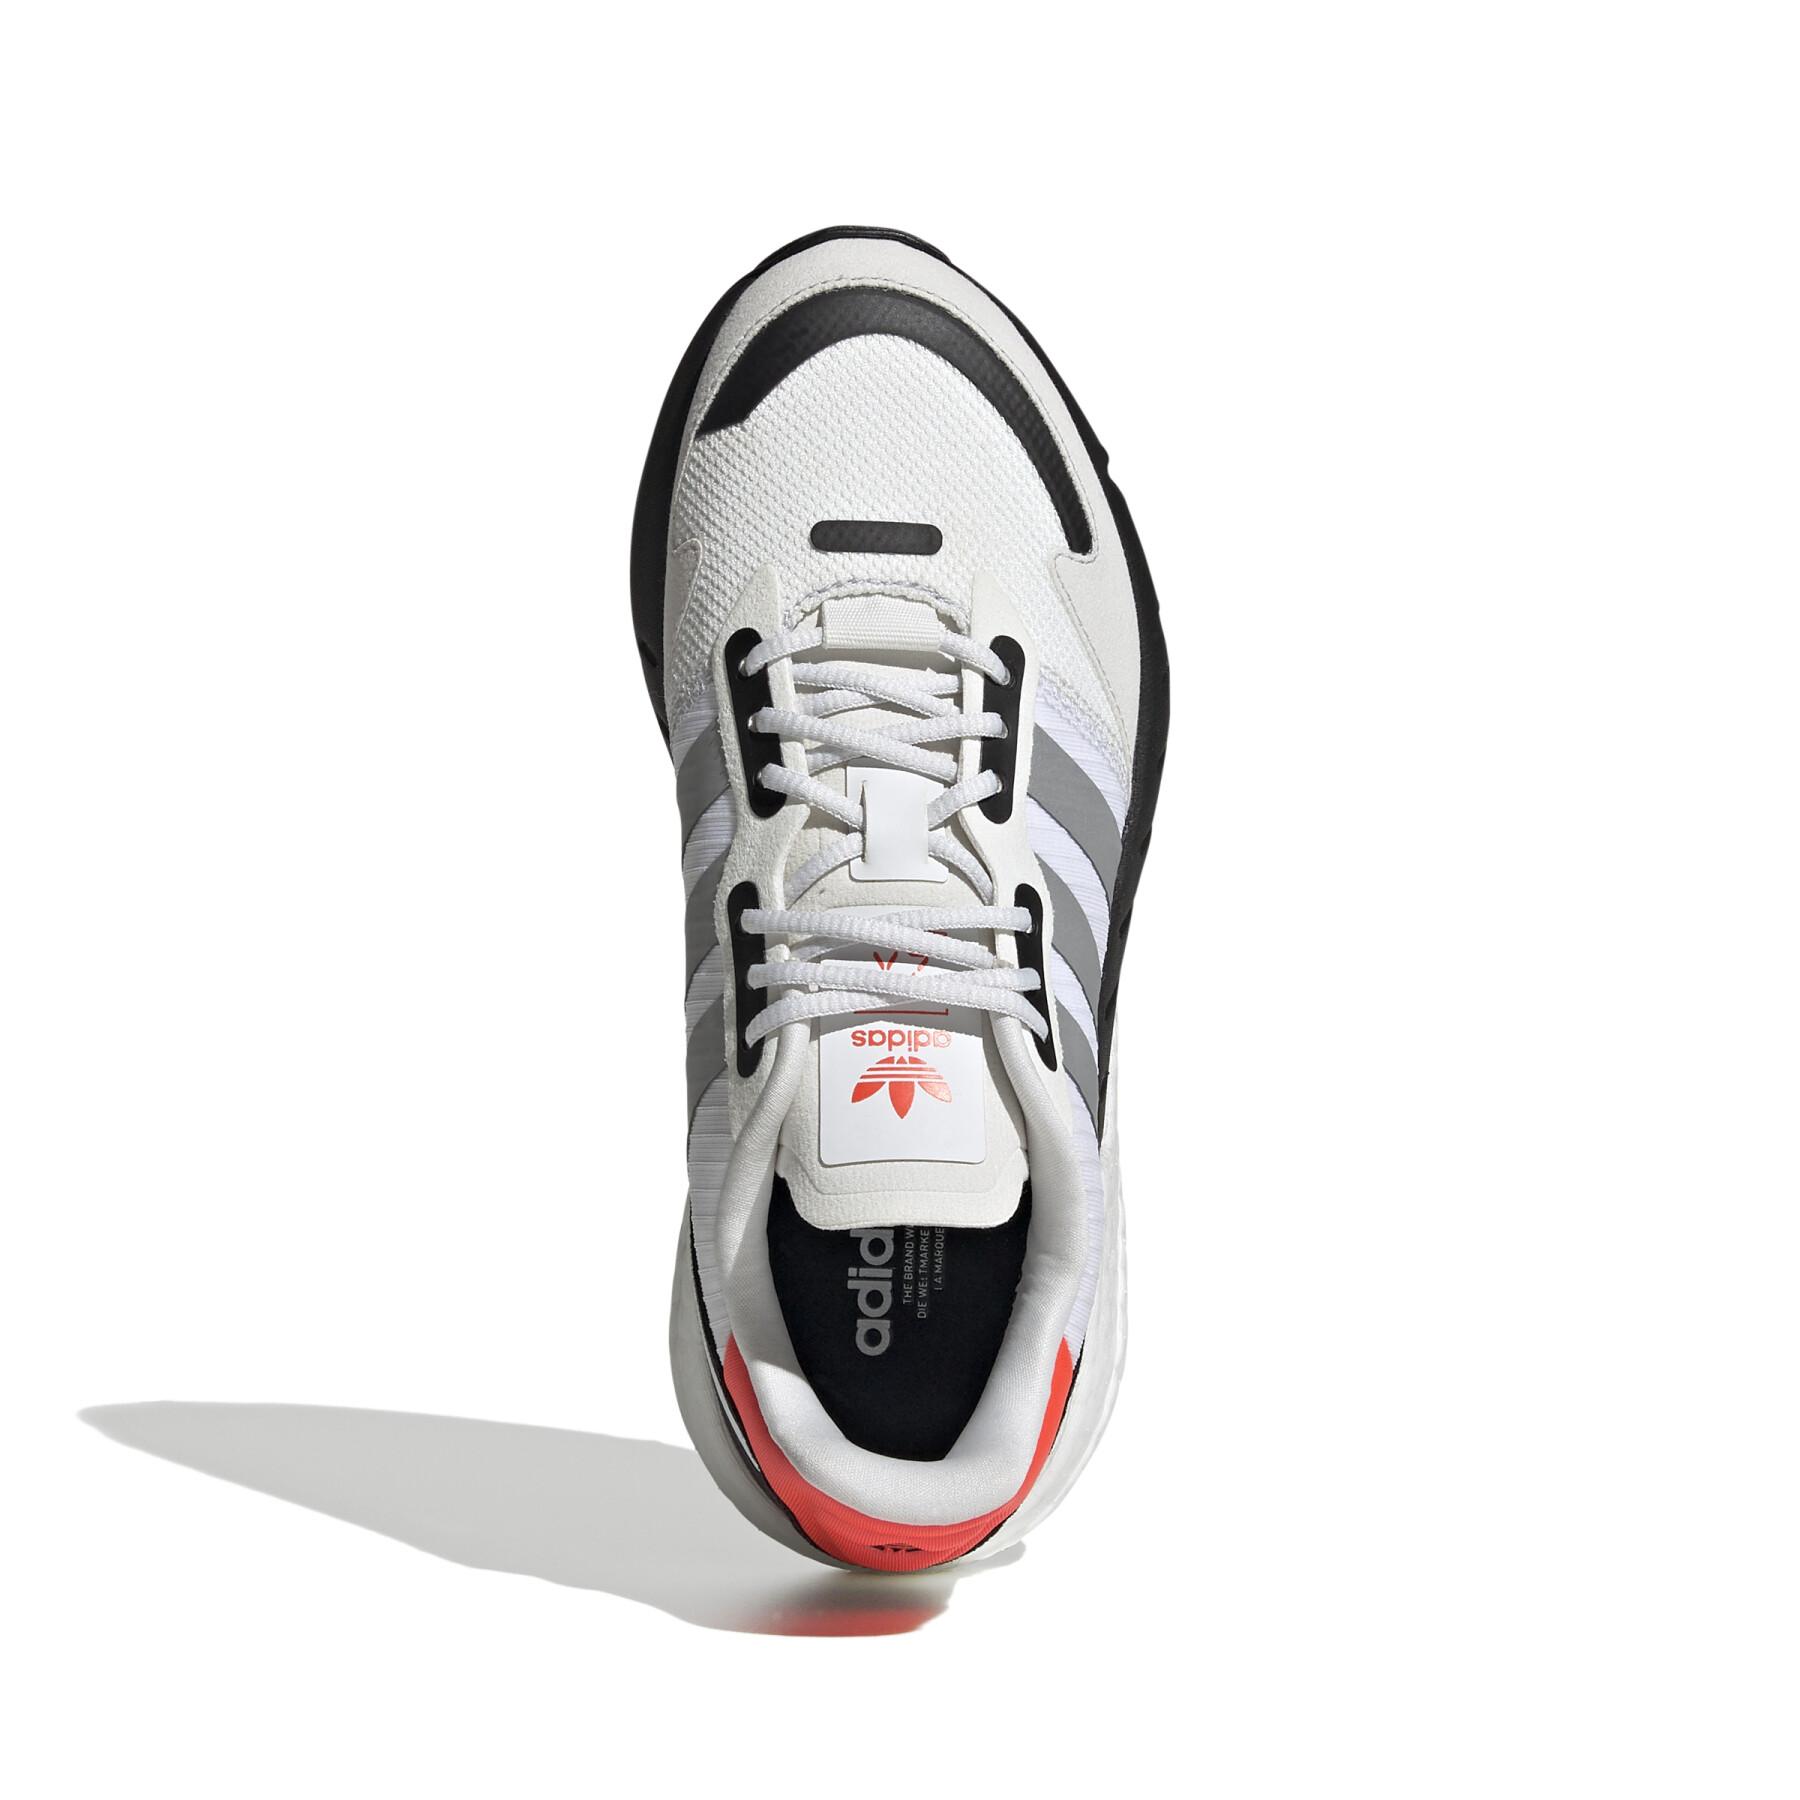 Children's sneakers adidas Originals ZX 1K Boost